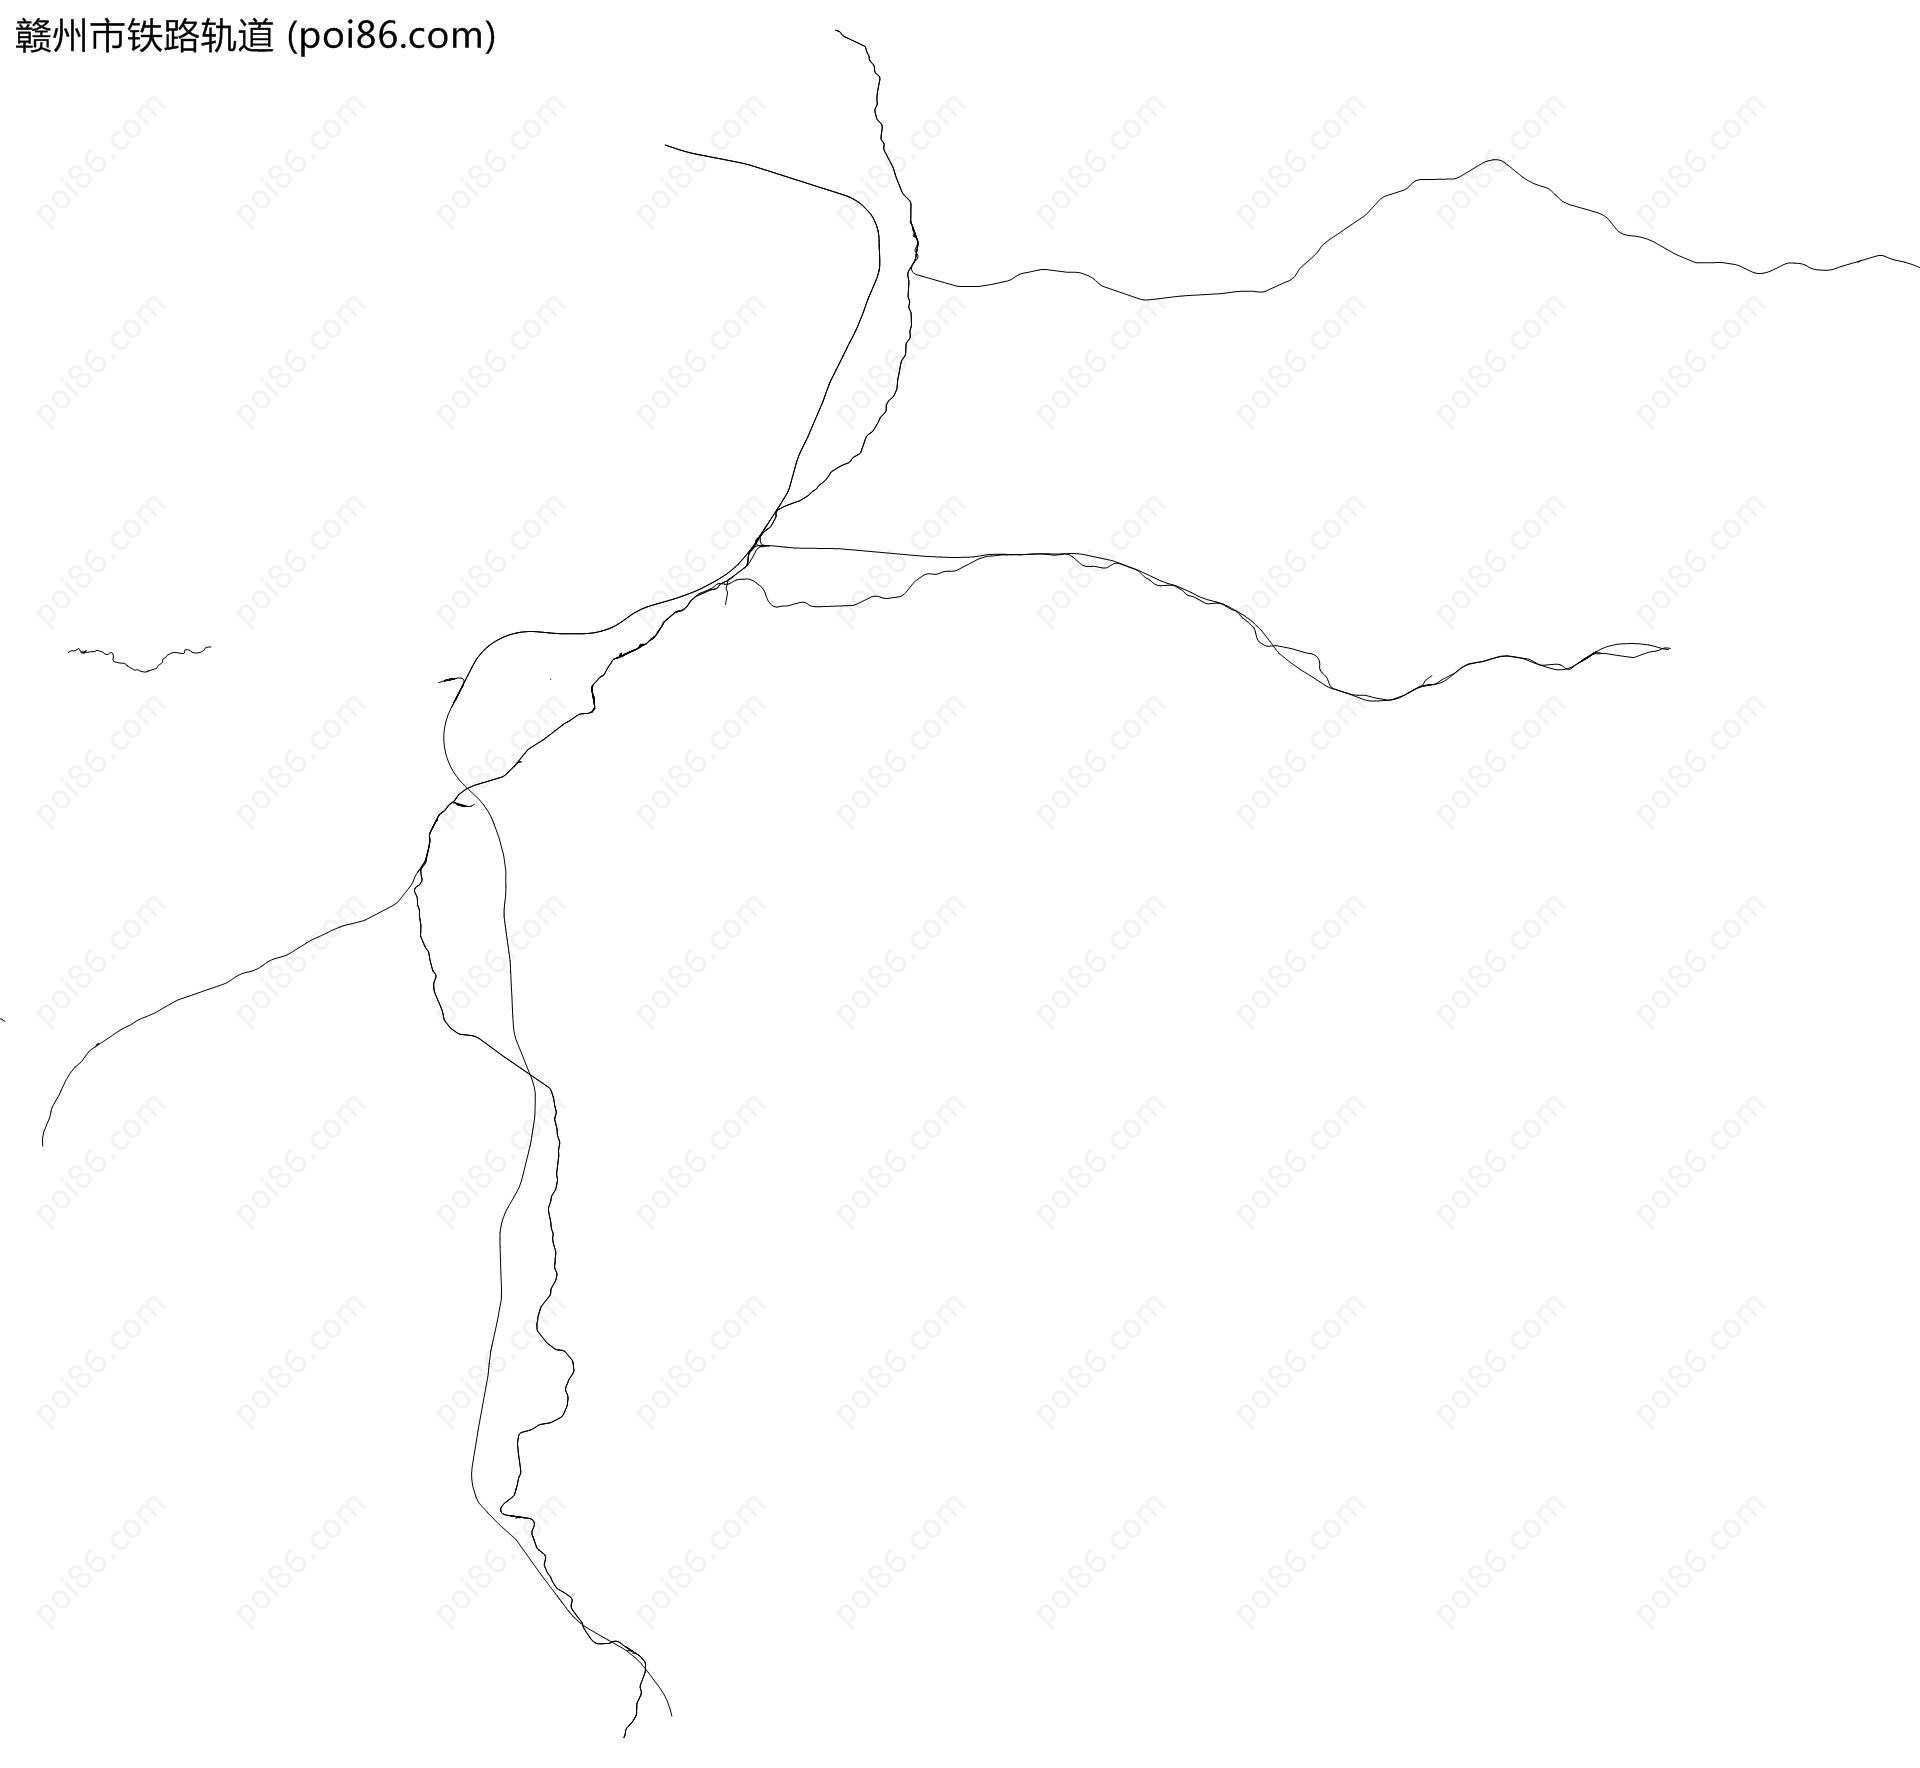 赣州市铁路轨道地图